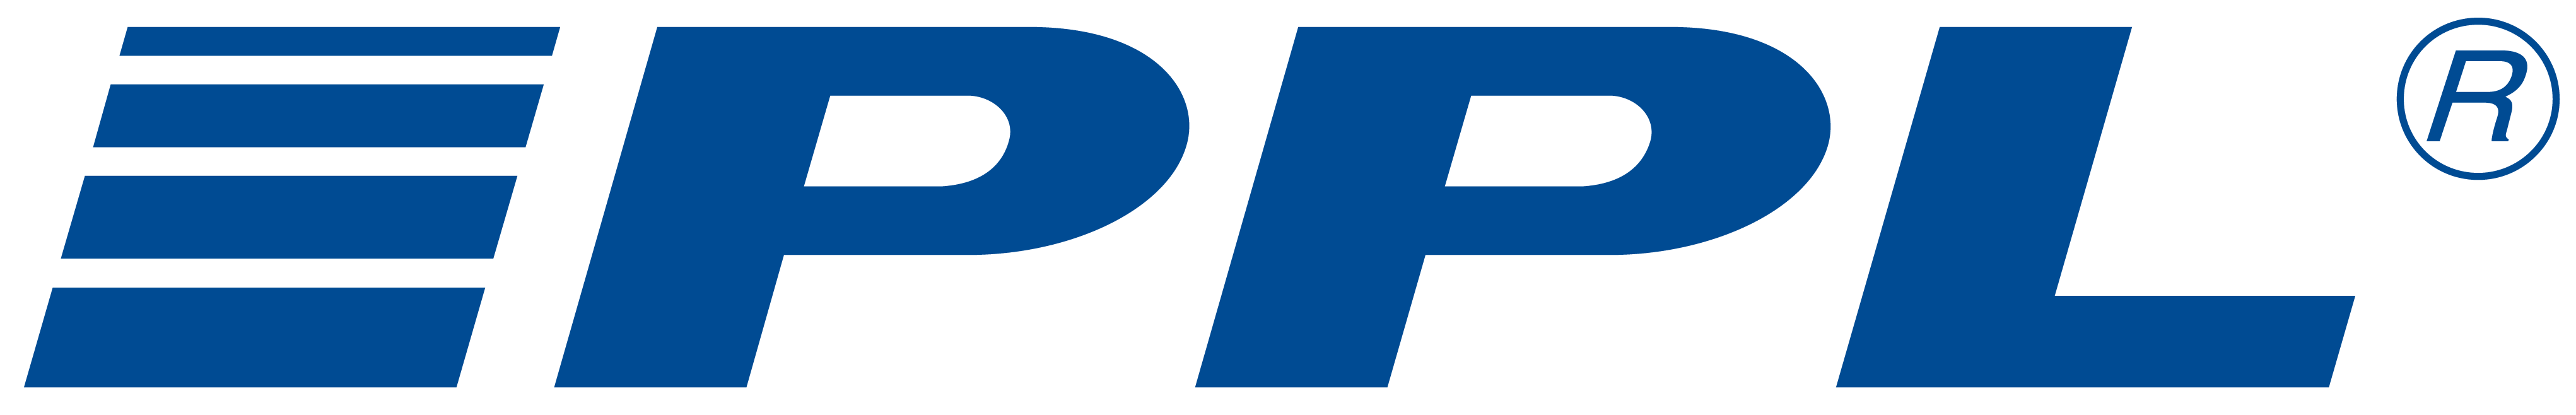 PPL-logo-flexibilni-svetlybg-rgb